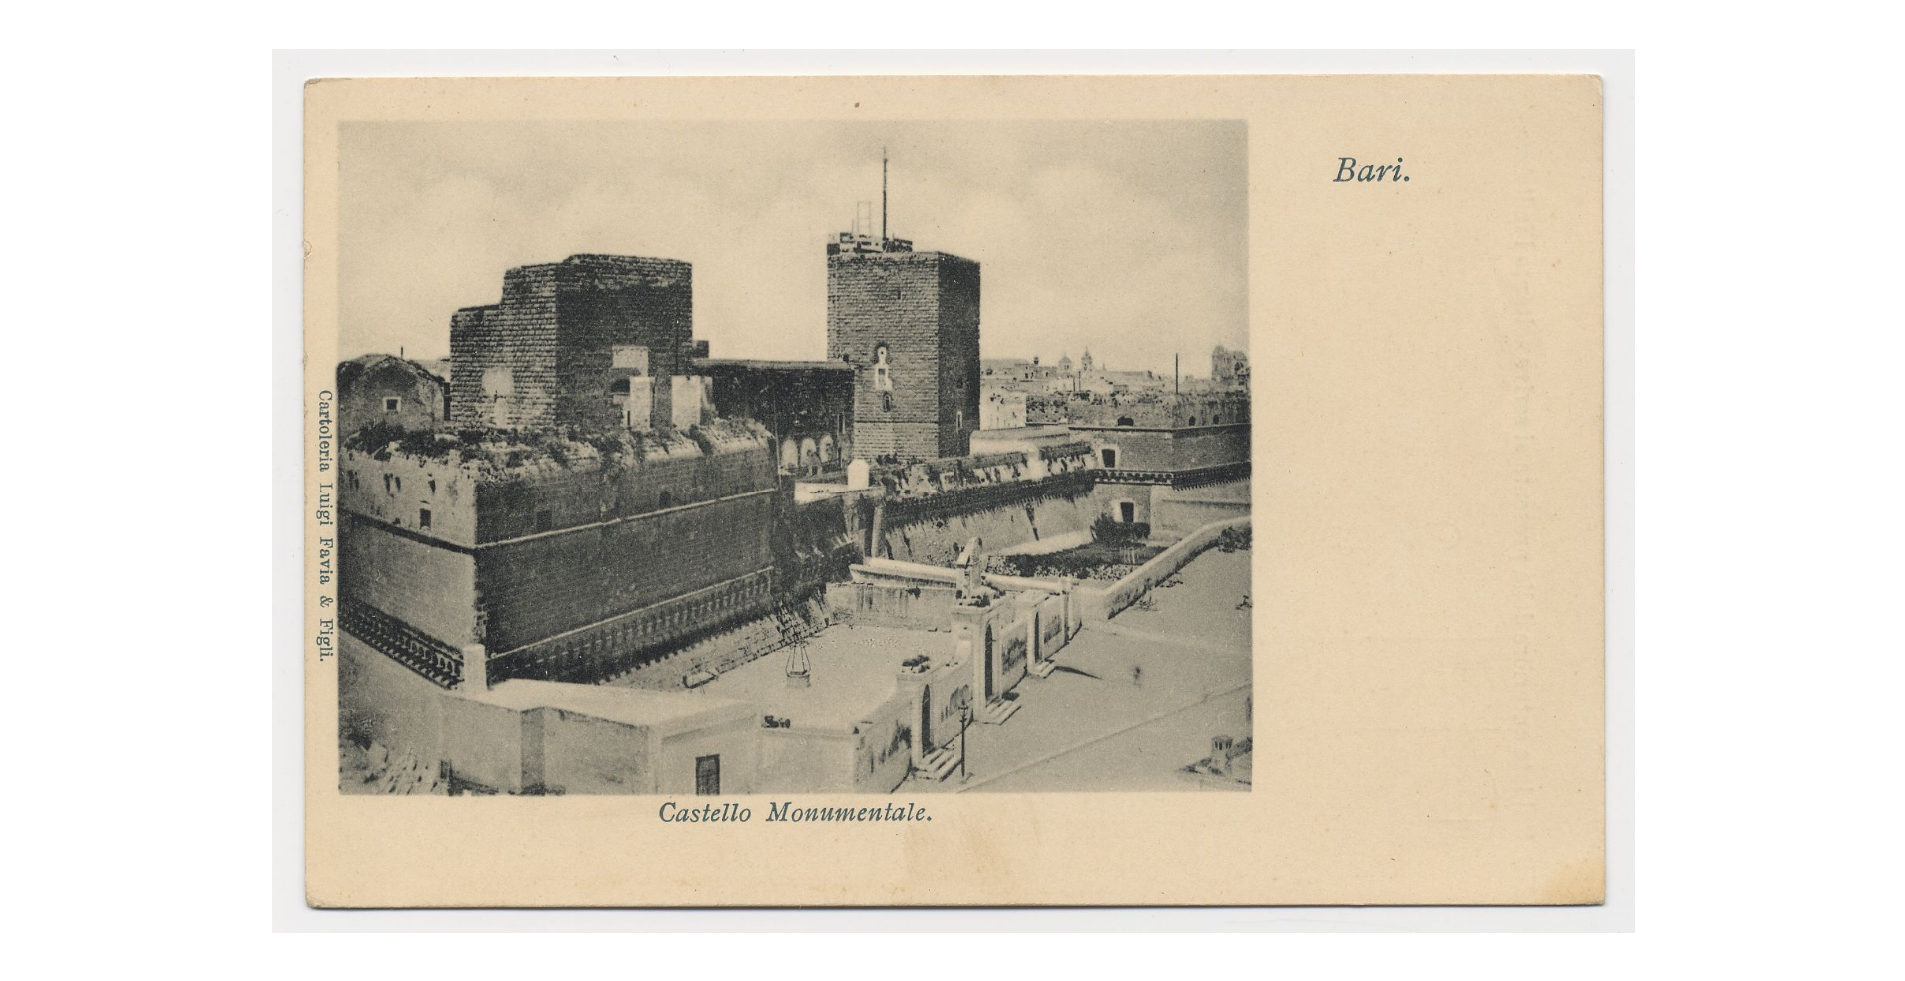 Fotografo non identificato, Bari - Castello monumentale, 1905, cartolina, FFC018245